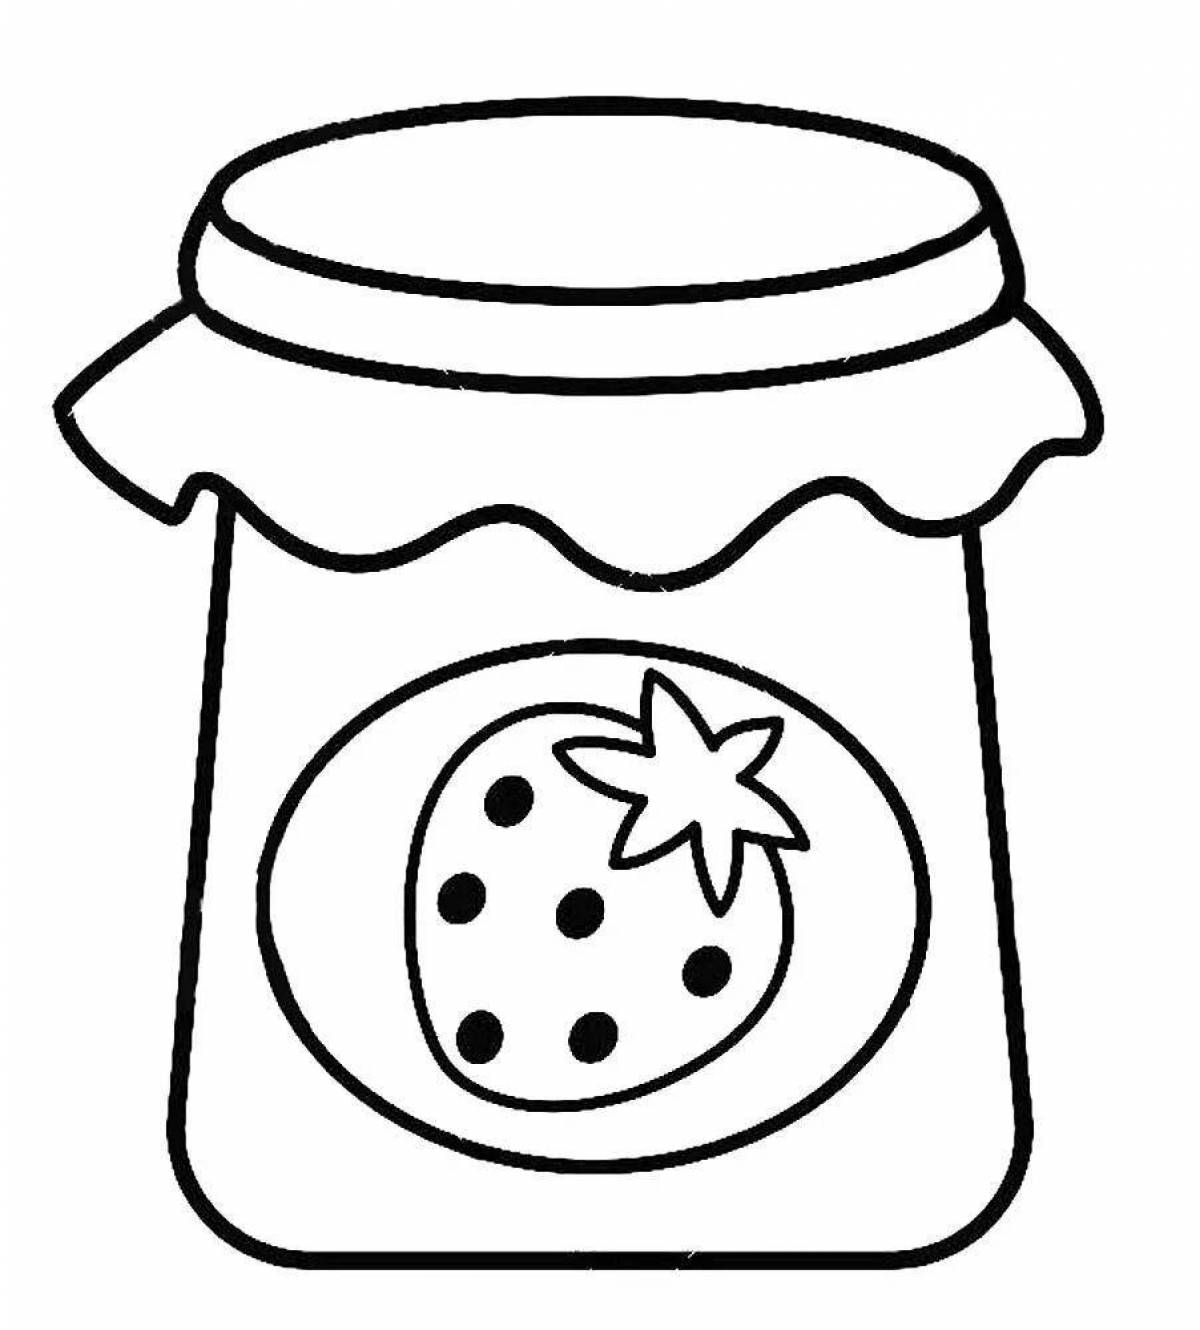 Coloring jar of jam